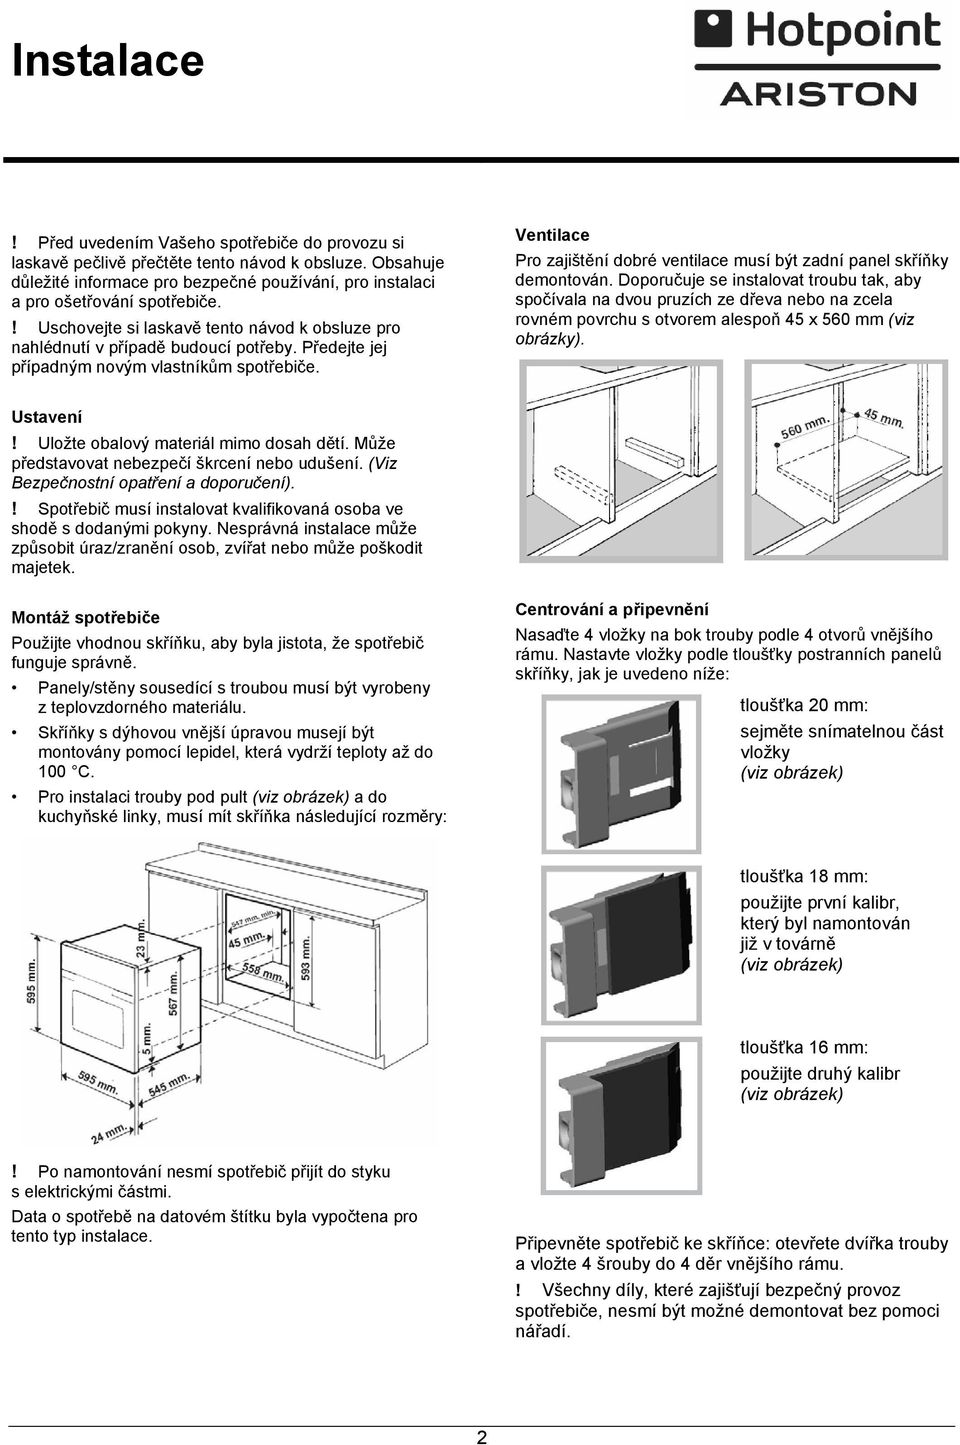 Ventilace Pro zajištění dobré ventilace musí být zadní panel skříňky demontován.